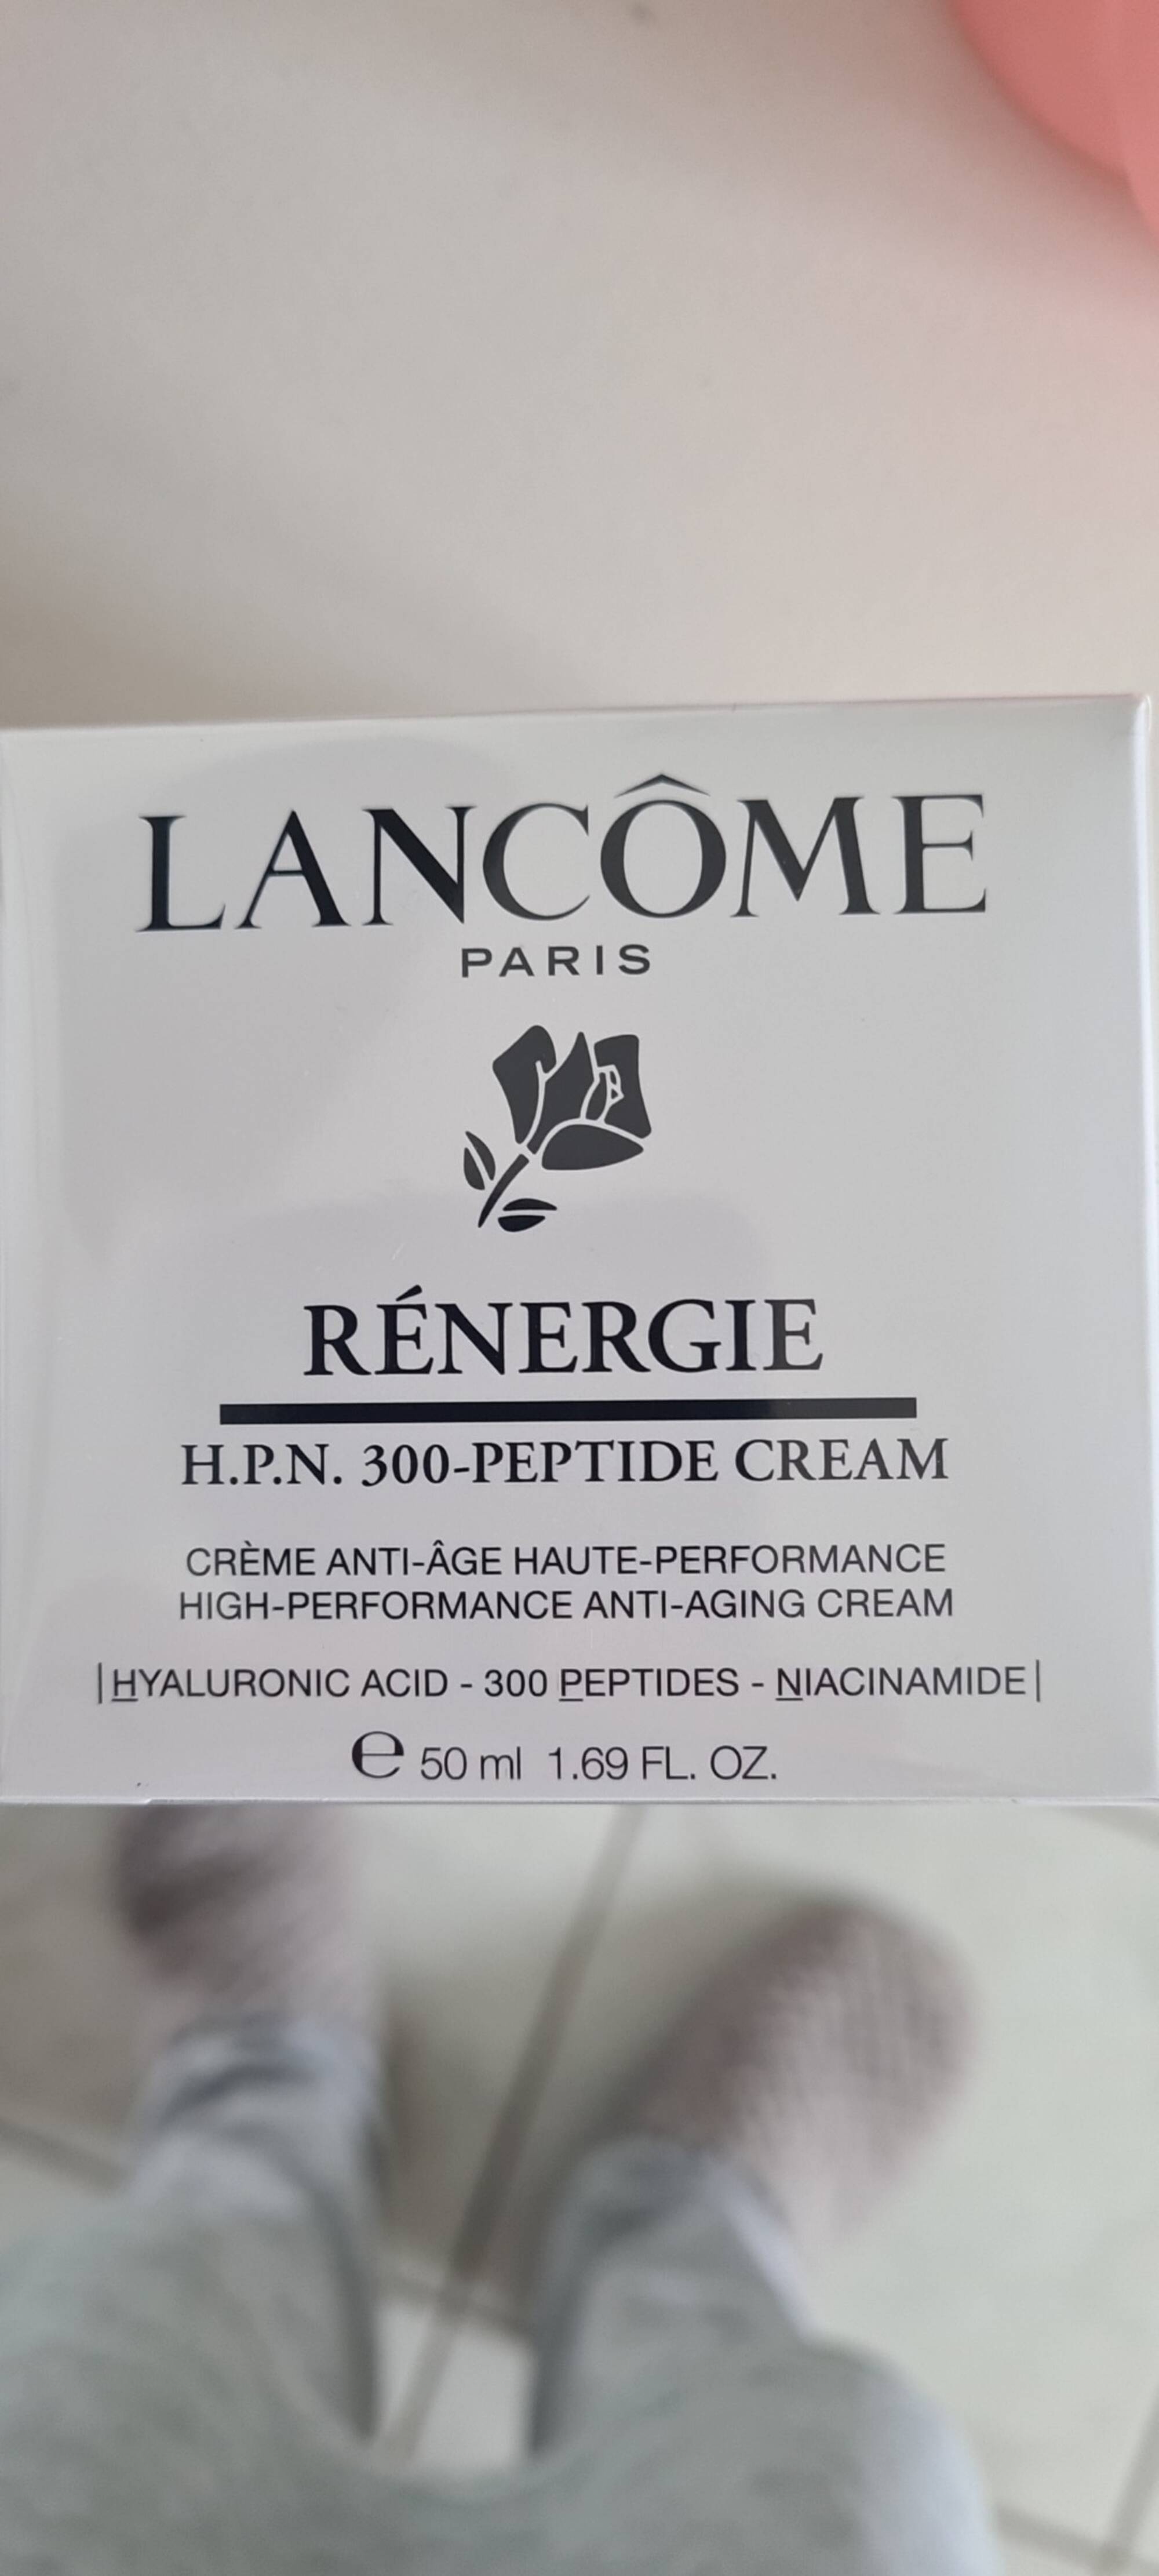 LANCÔME PARIS - Rénergie - Crème anti-âge